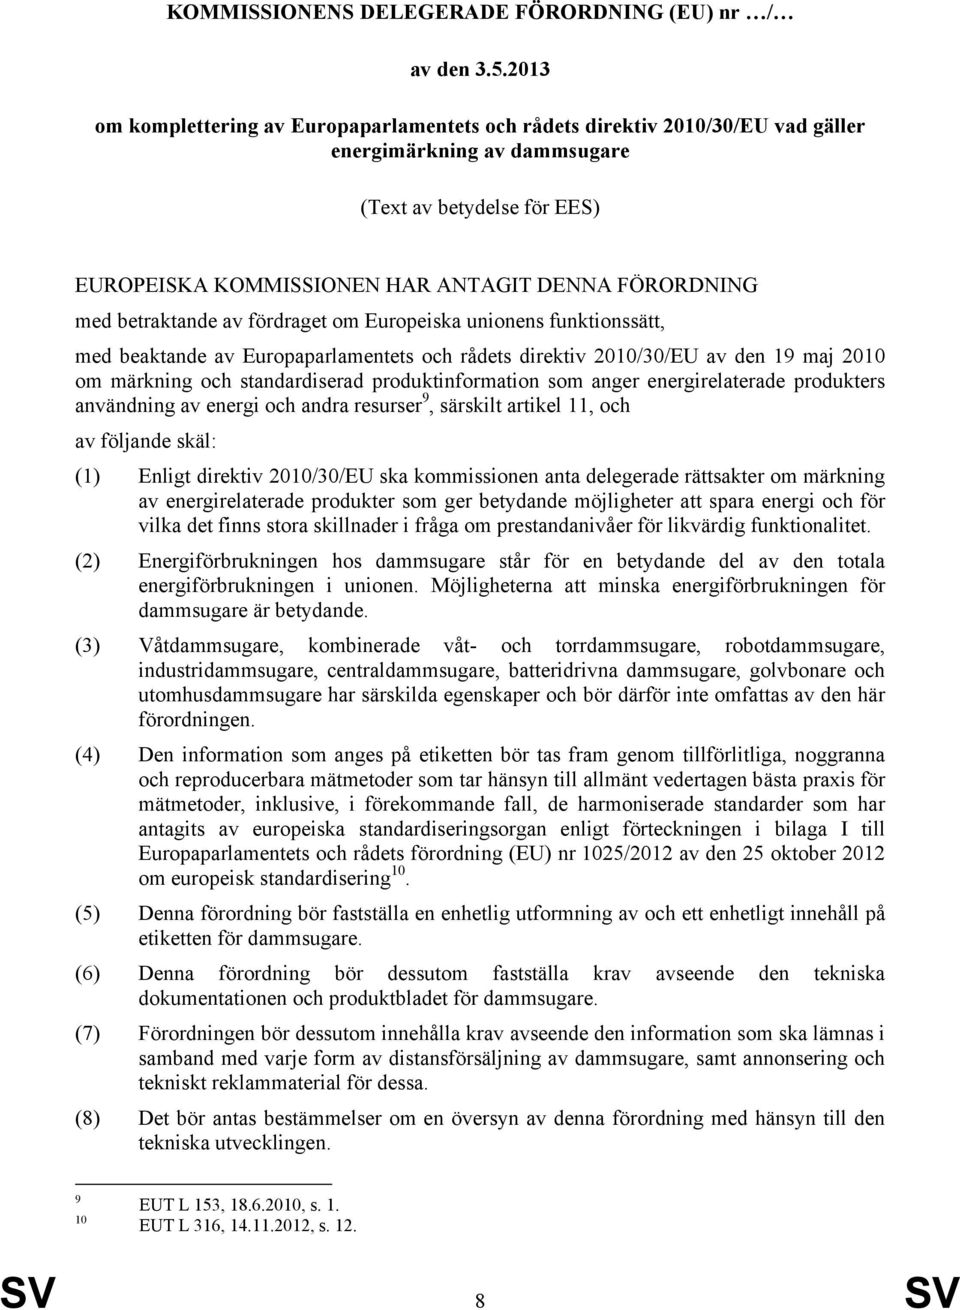 betraktande av fördraget om Europeiska unionens funktionssätt, med beaktande av Europaparlamentets och rådets direktiv 2010/30/EU av den 19 maj 2010 om märkning och standardiserad produktinformation